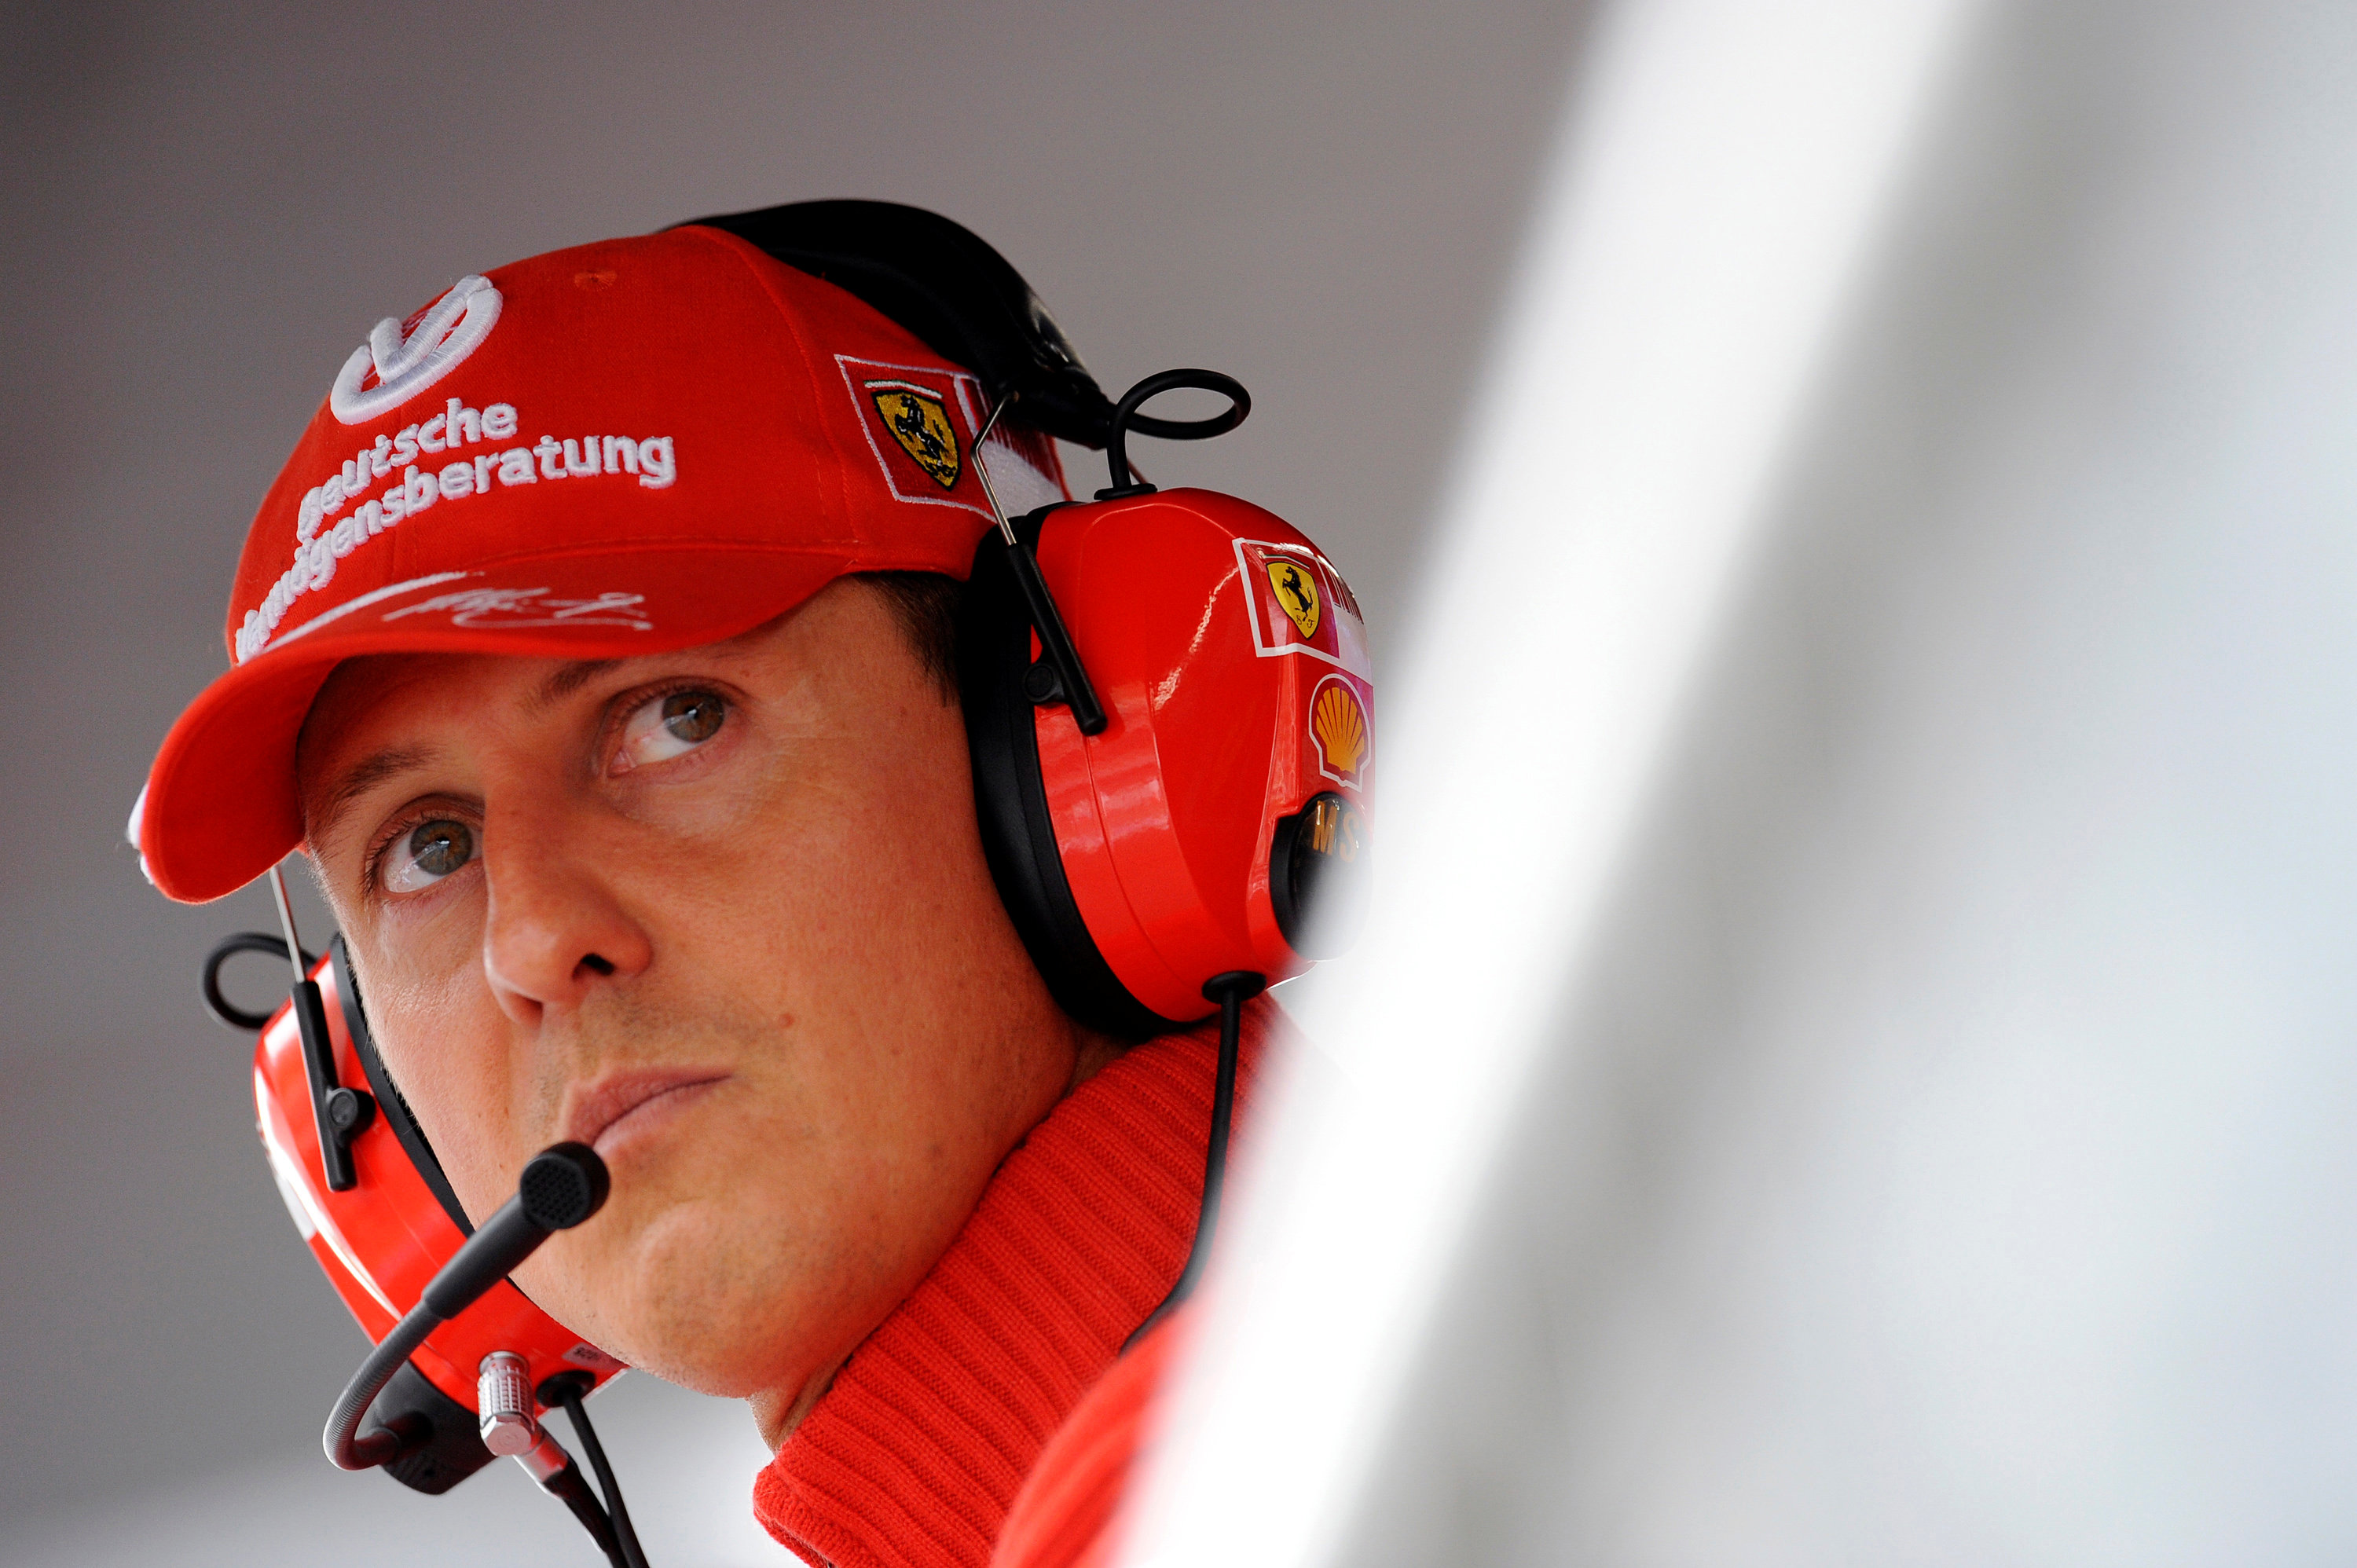 Schumacher ha mostrado “señales alentadoras”: Brawn